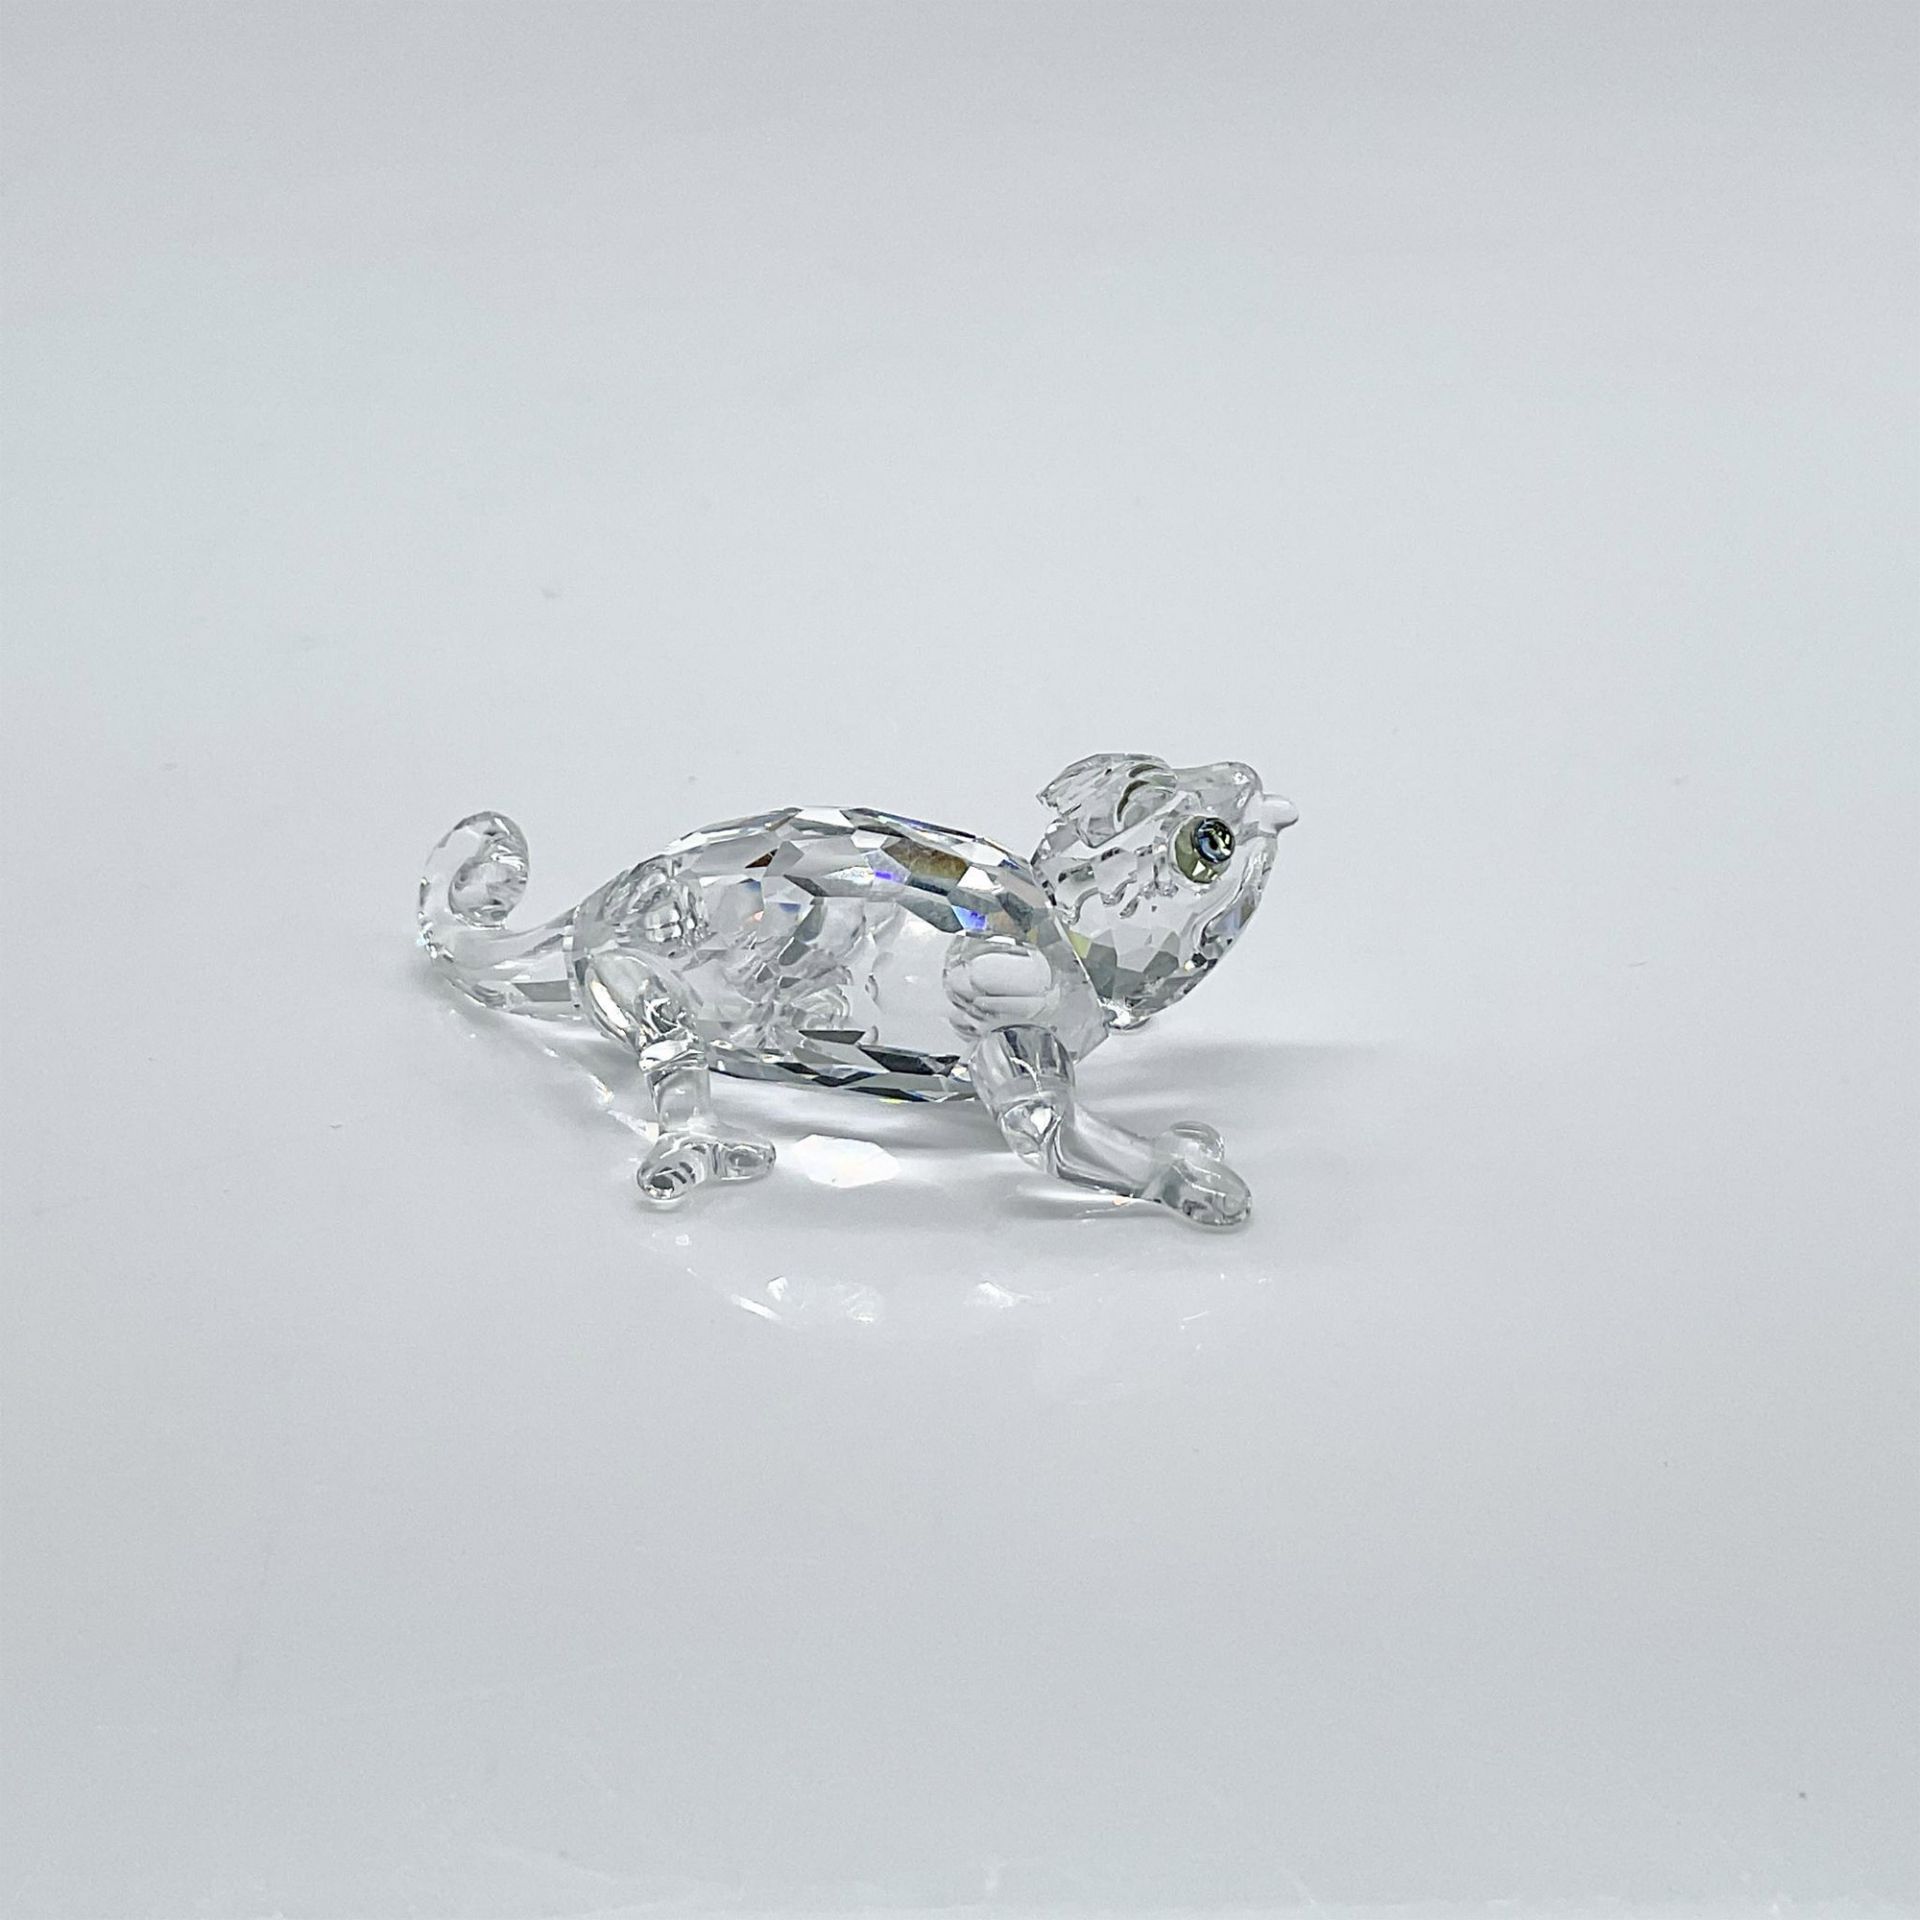 Swarovski Crystal Figurine, Chameleon - Image 2 of 4